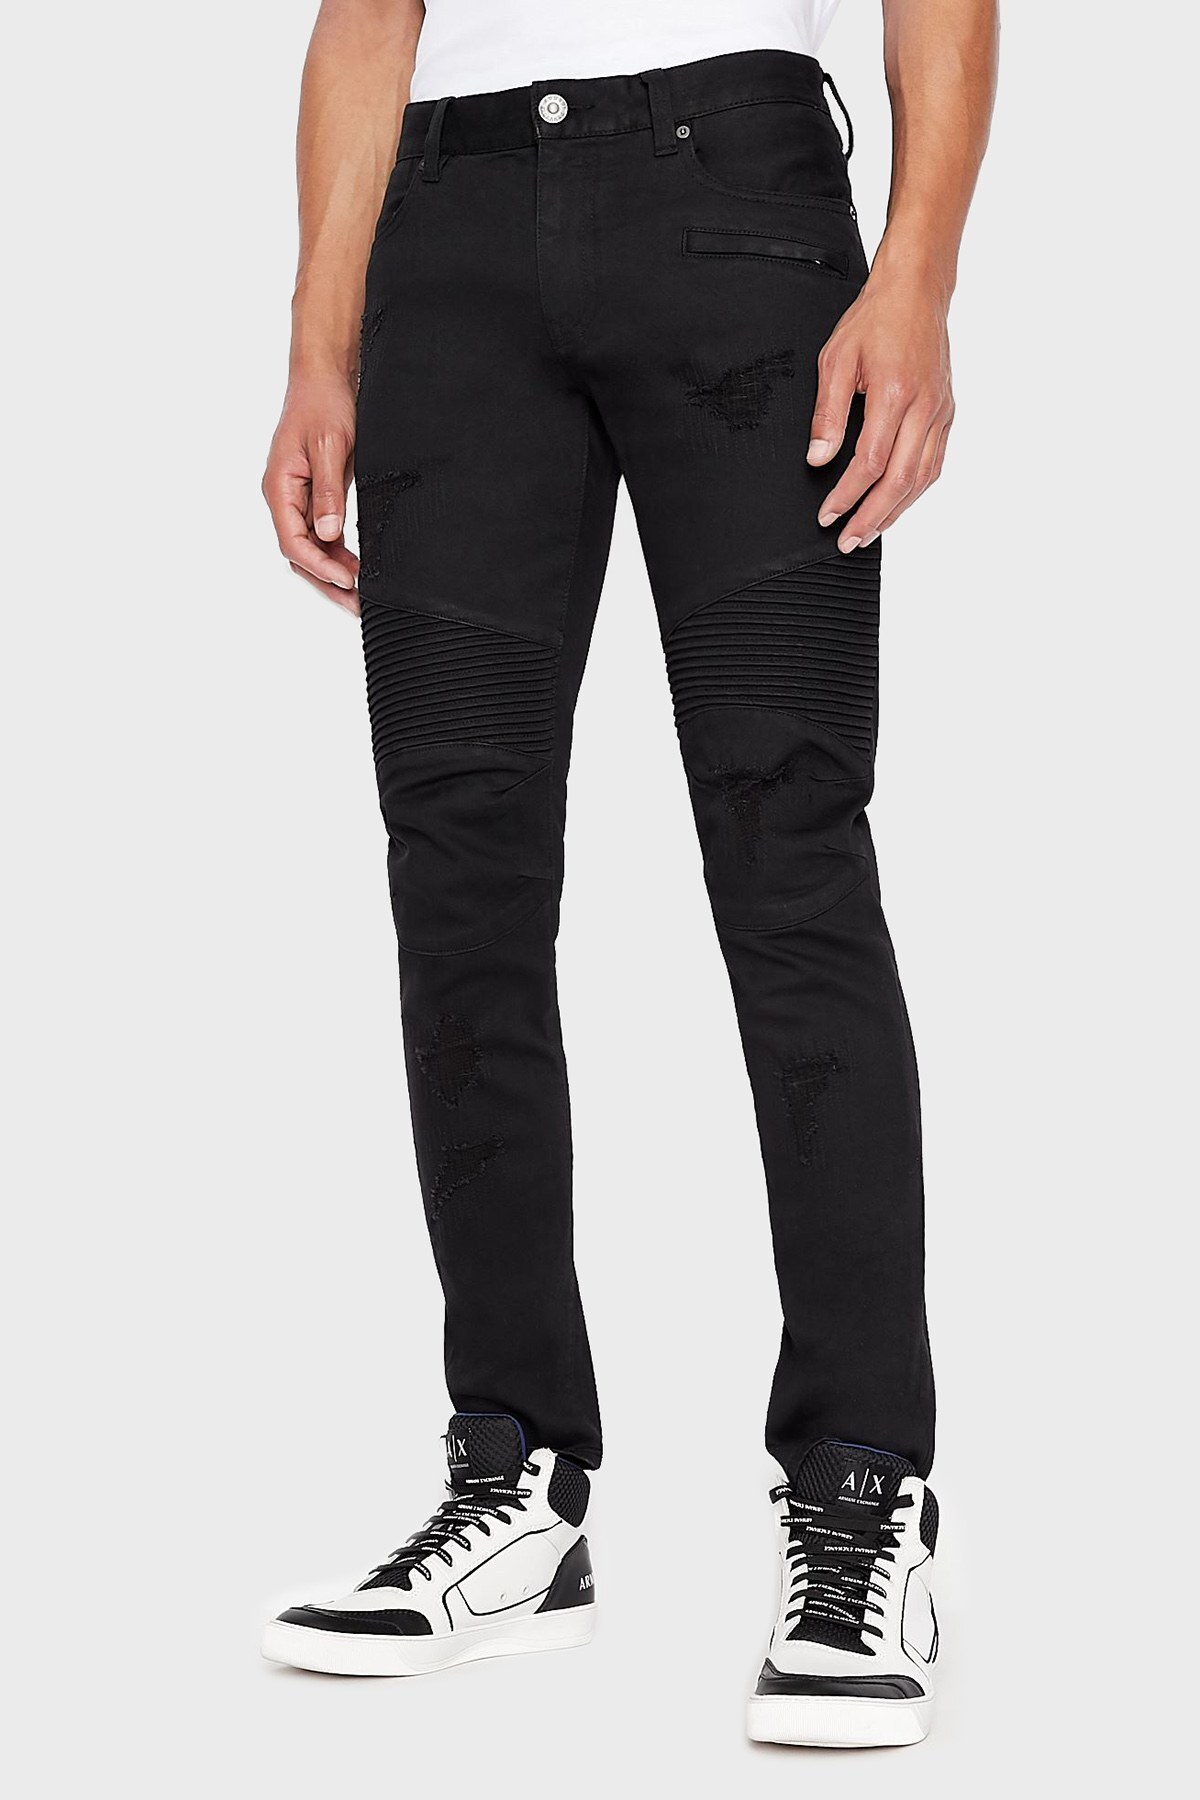 Armani Exchange J27 Pamuklu Normal Bel Skinny Fit Streç Jeans Erkek Kot Pantolon 3LZJ27 Z1AAZ 1200 SİYAH